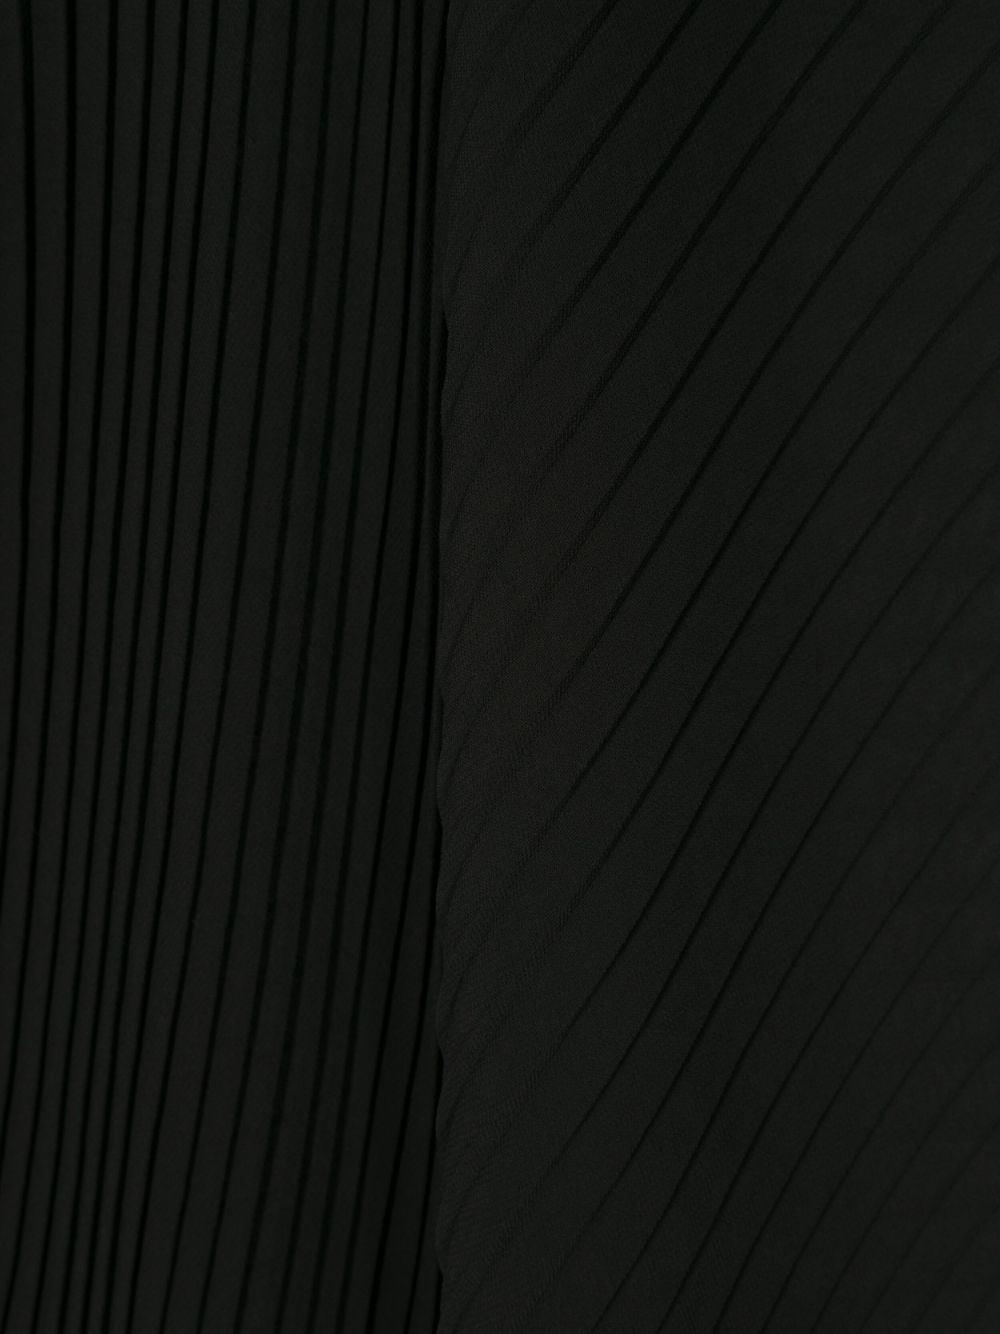 Emporio Armani plissé chiffon scarf - Black